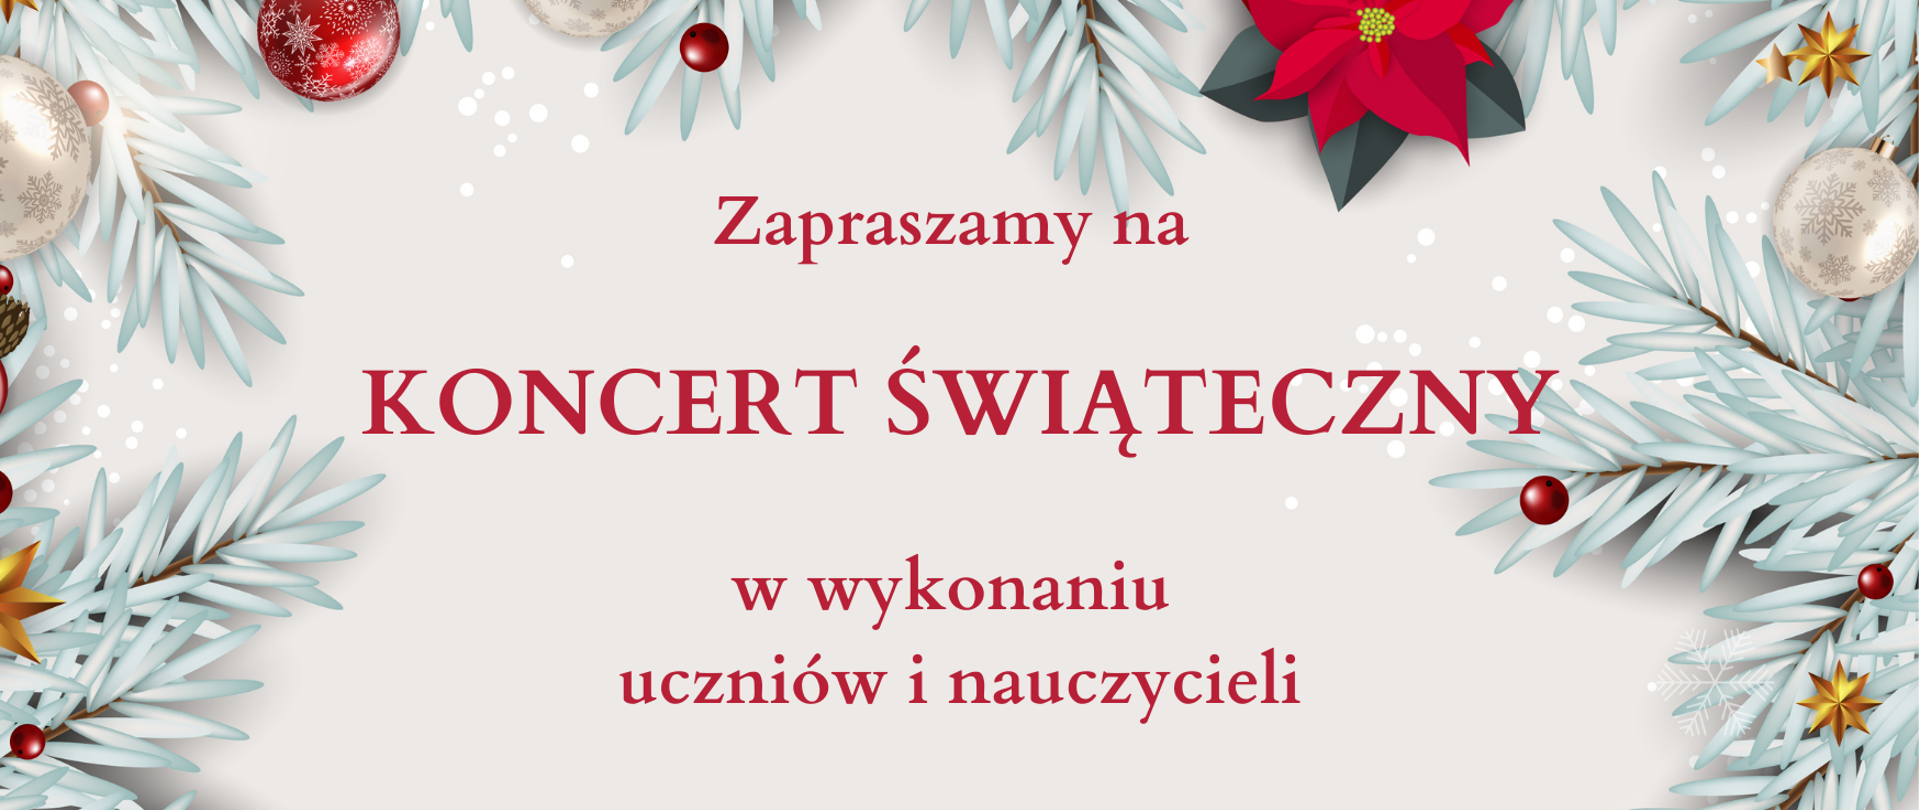 plakat z informacją o koncercie świątecznym na białym tle z ozdobami świątecznymi na obramowaniu